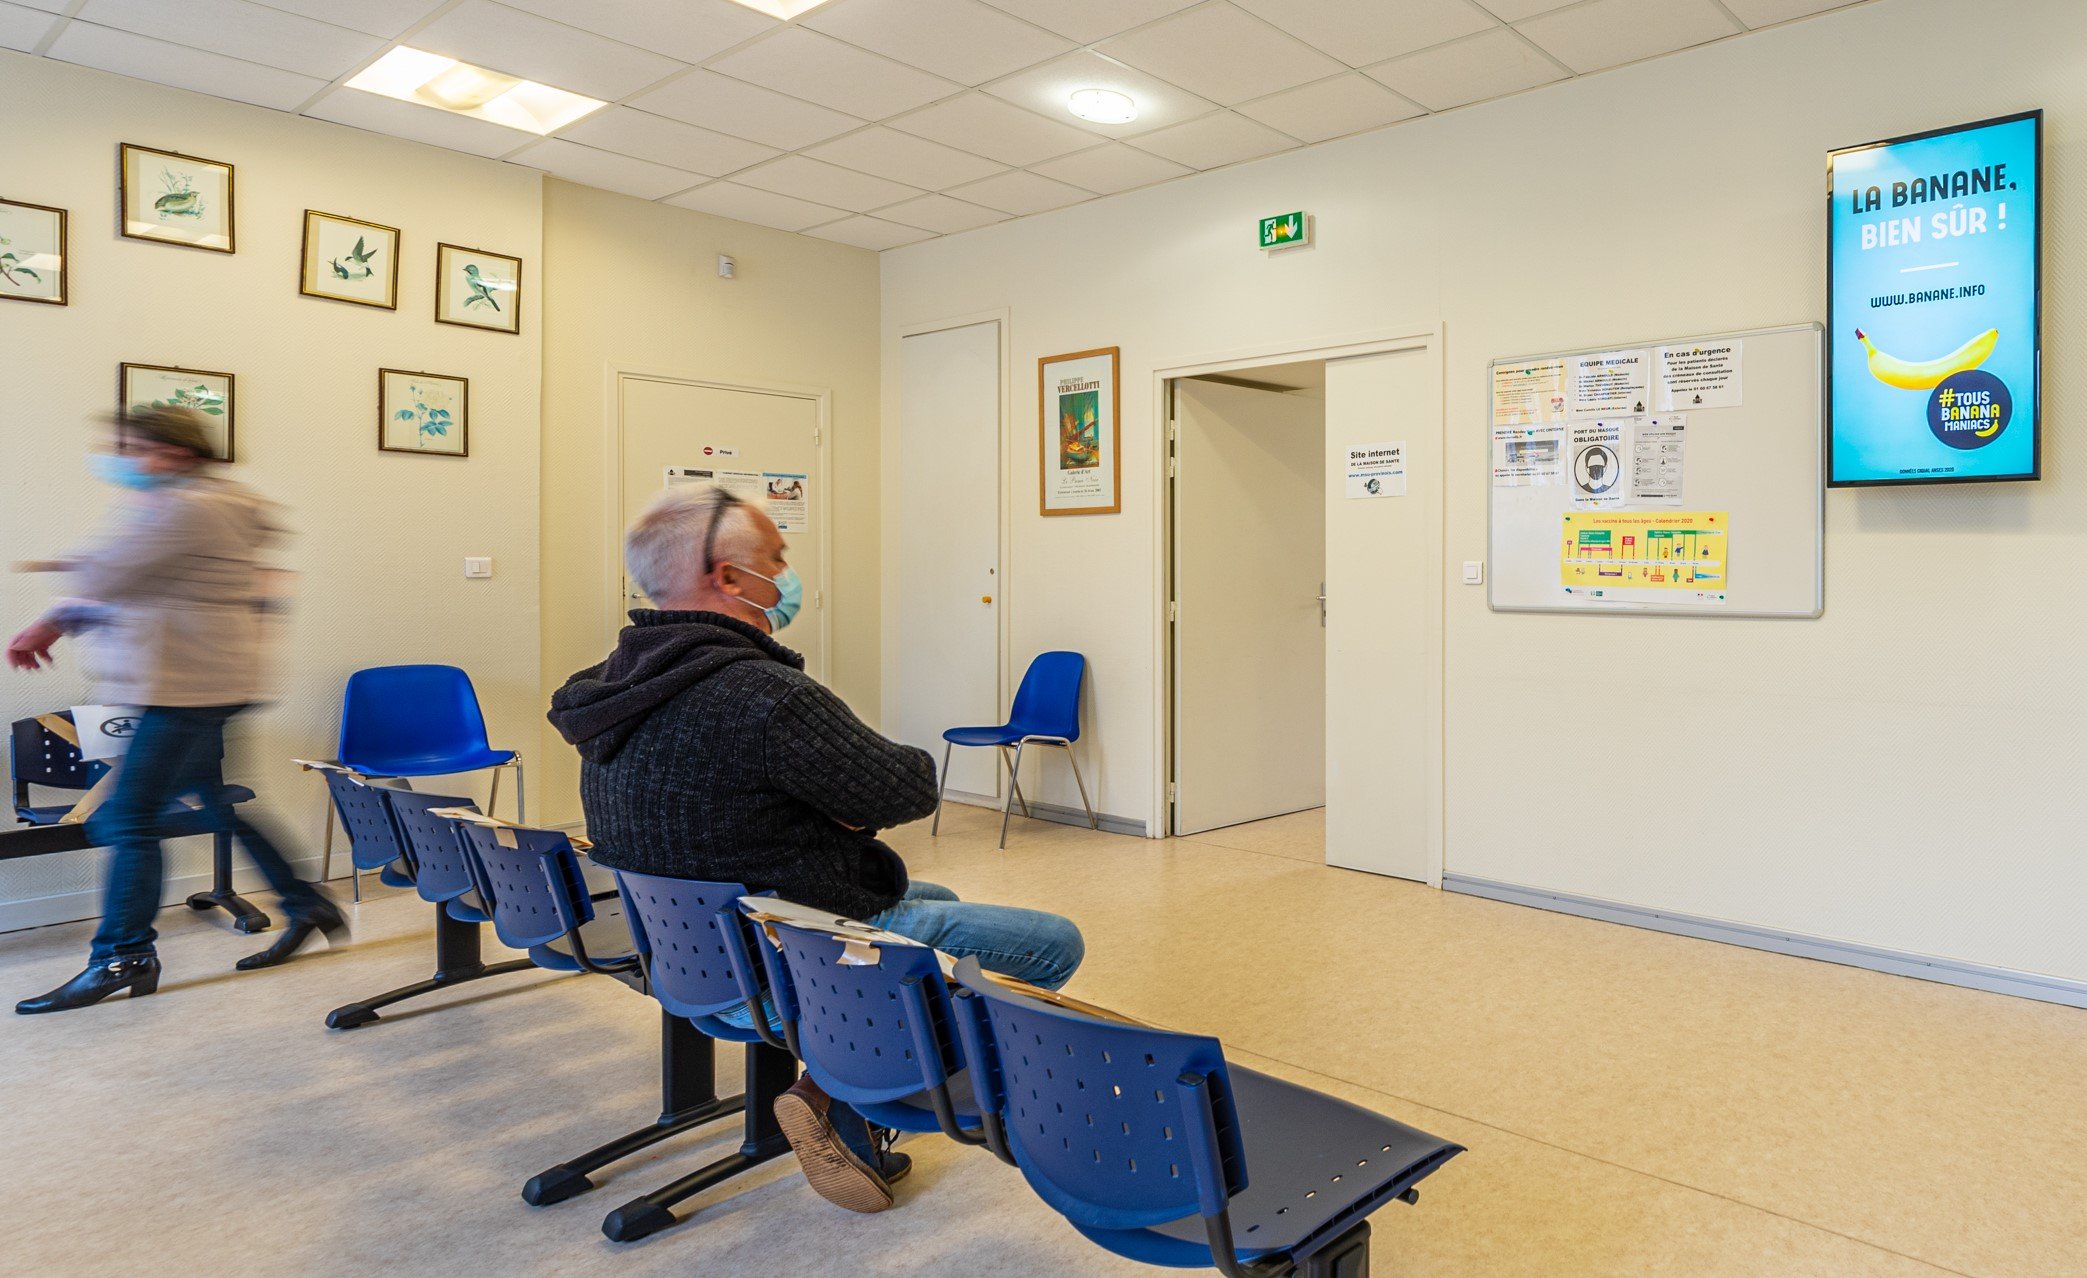 Patient regardant un écran d'affichage dynamique dans une salle d'attente médicale